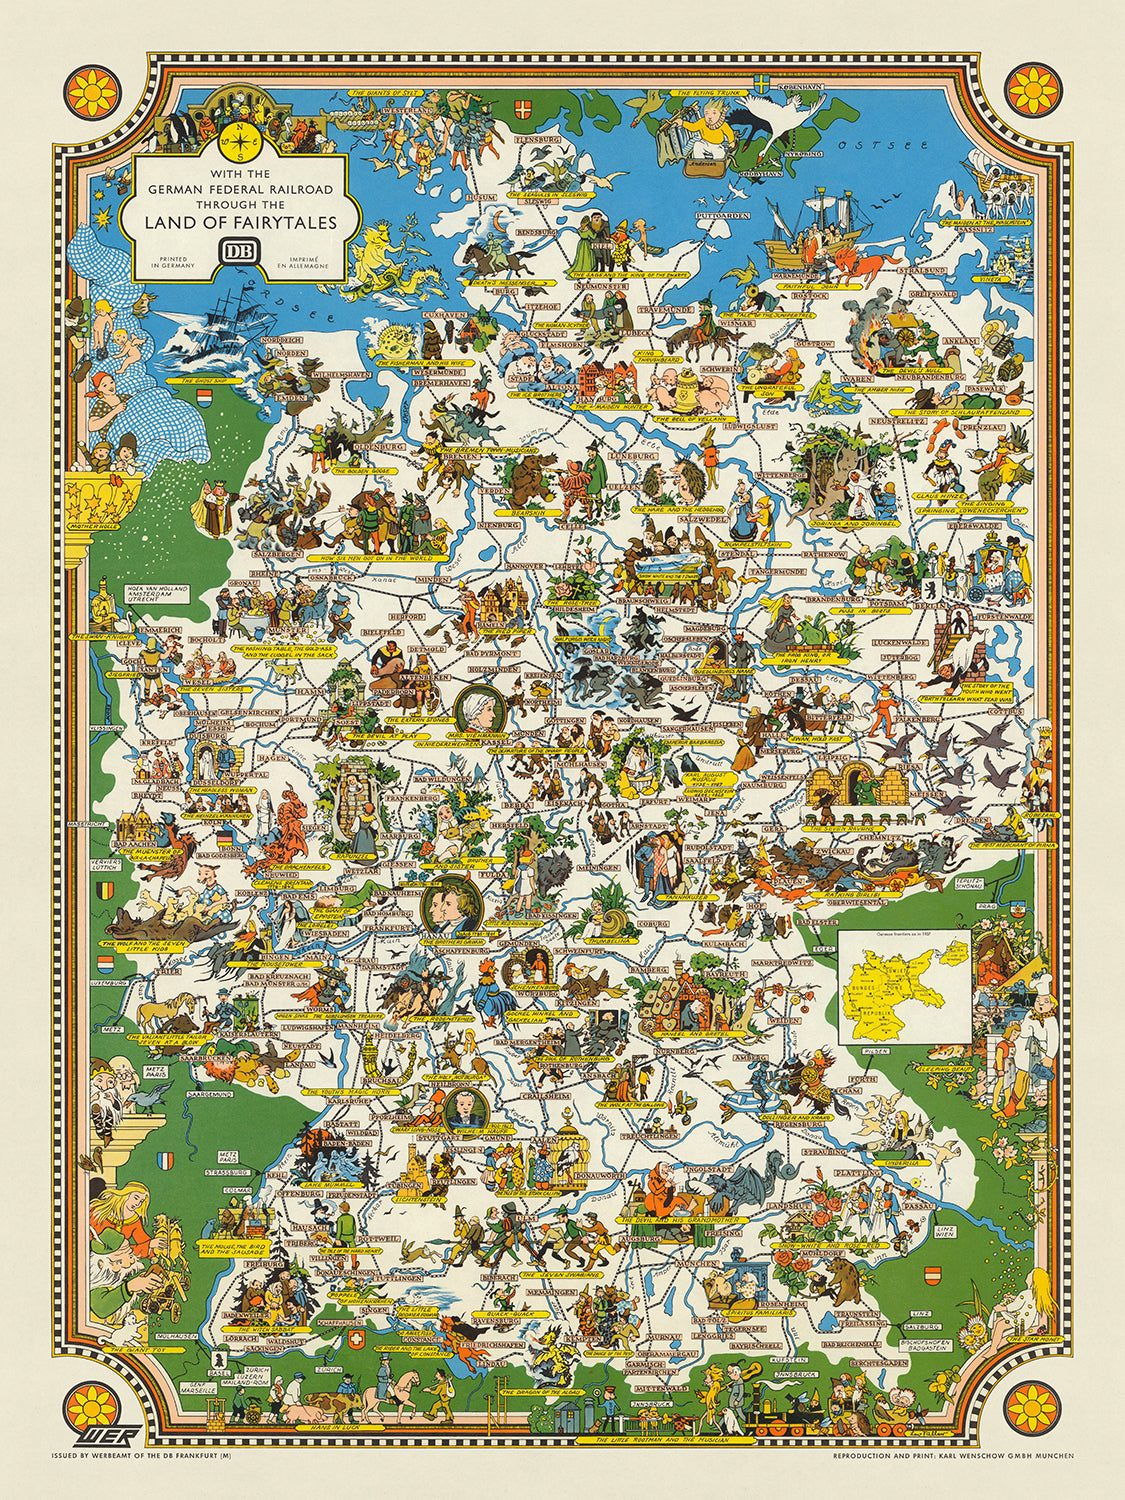 Ancienne carte picturale des contes de fées allemands de Faller, 1960 : Berlin, Munich, Hambourg, Contes de Grimm, Guerre froide